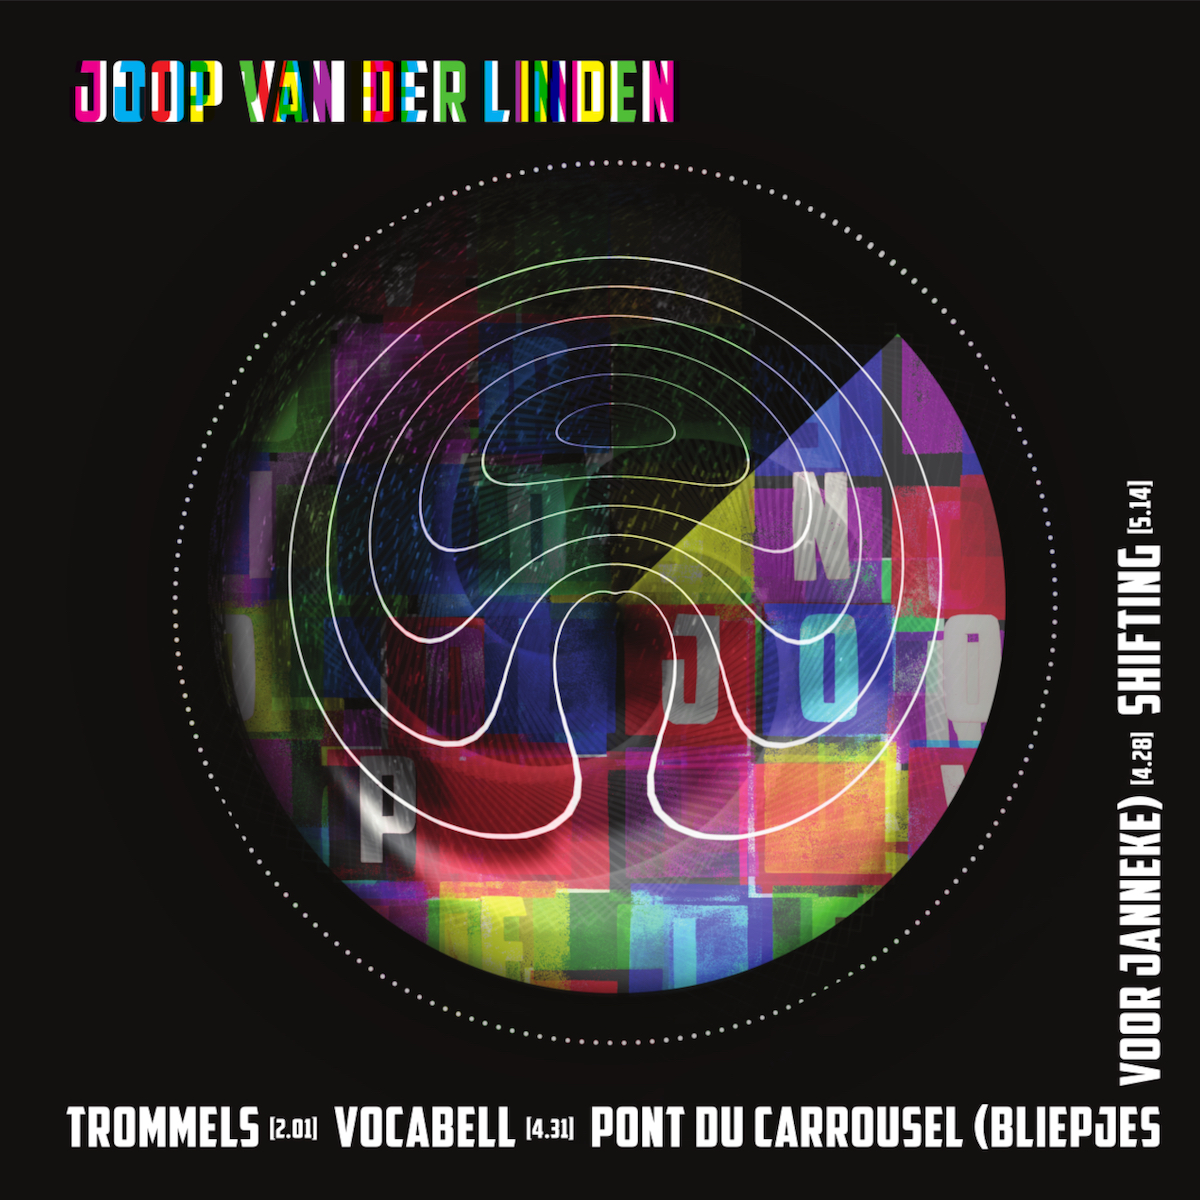 Joop van der Linden - vinyl album